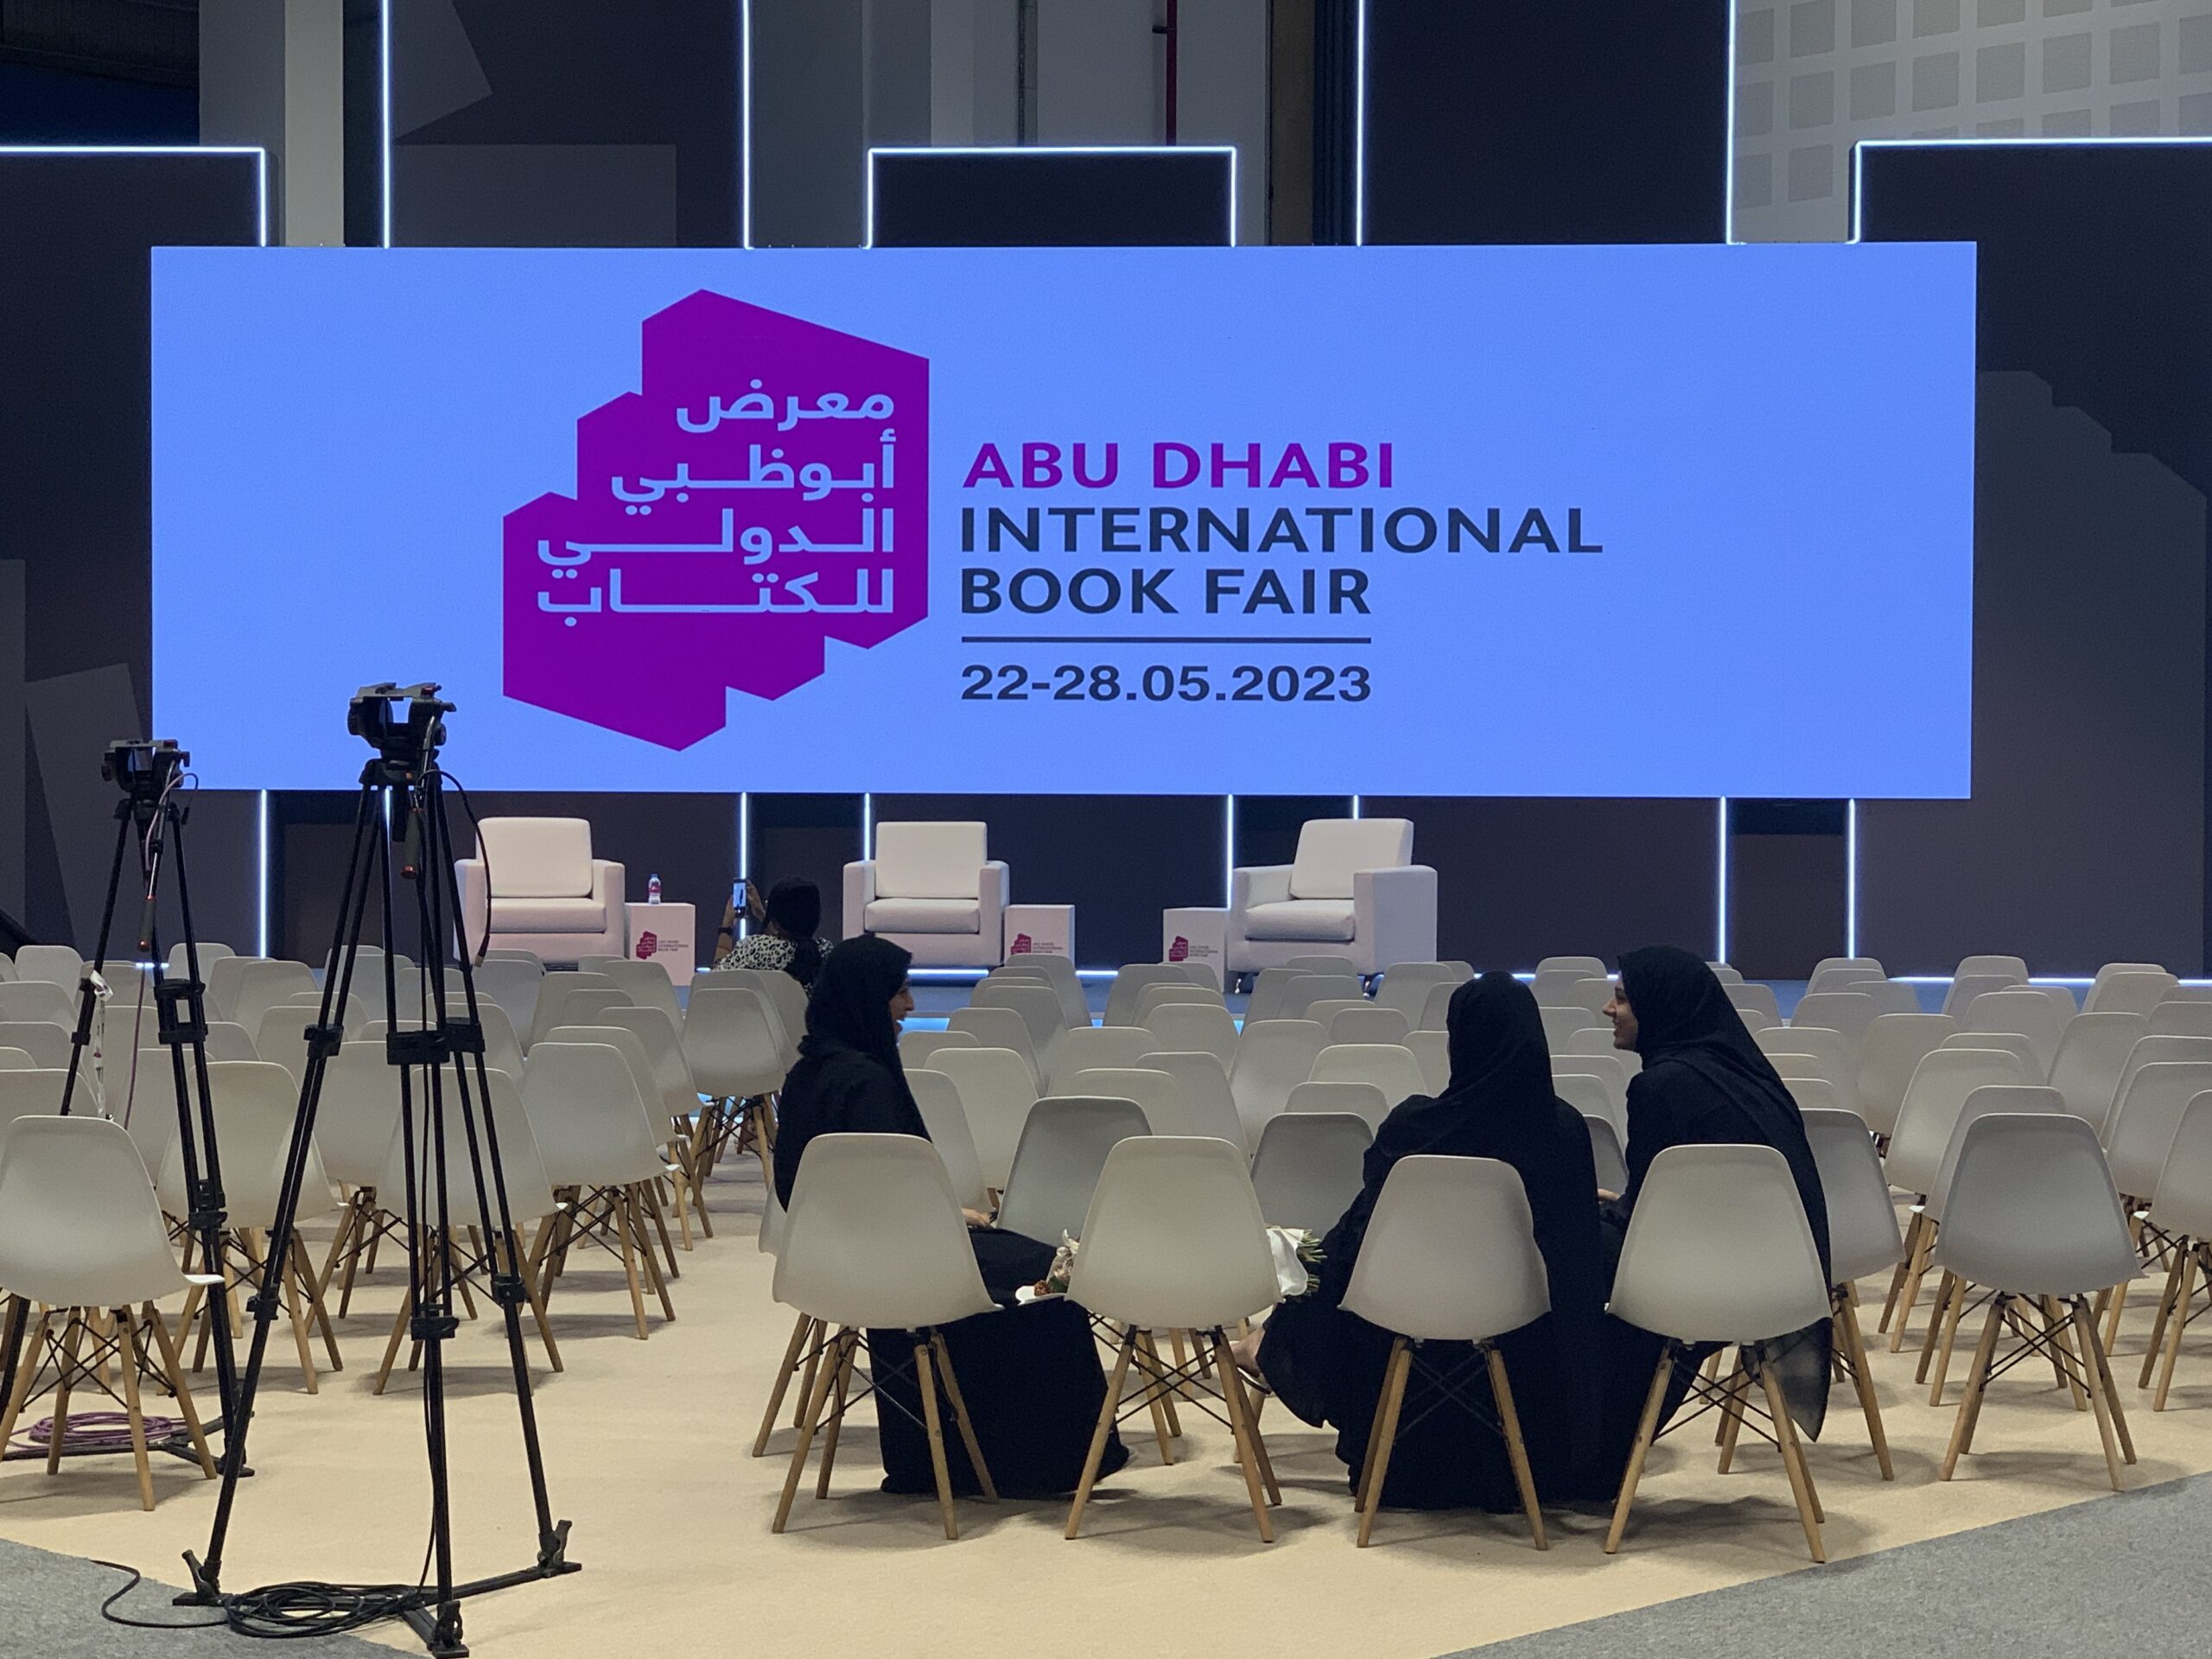 Bildschirm mit Logo der Abu Dhabi International Book Fair